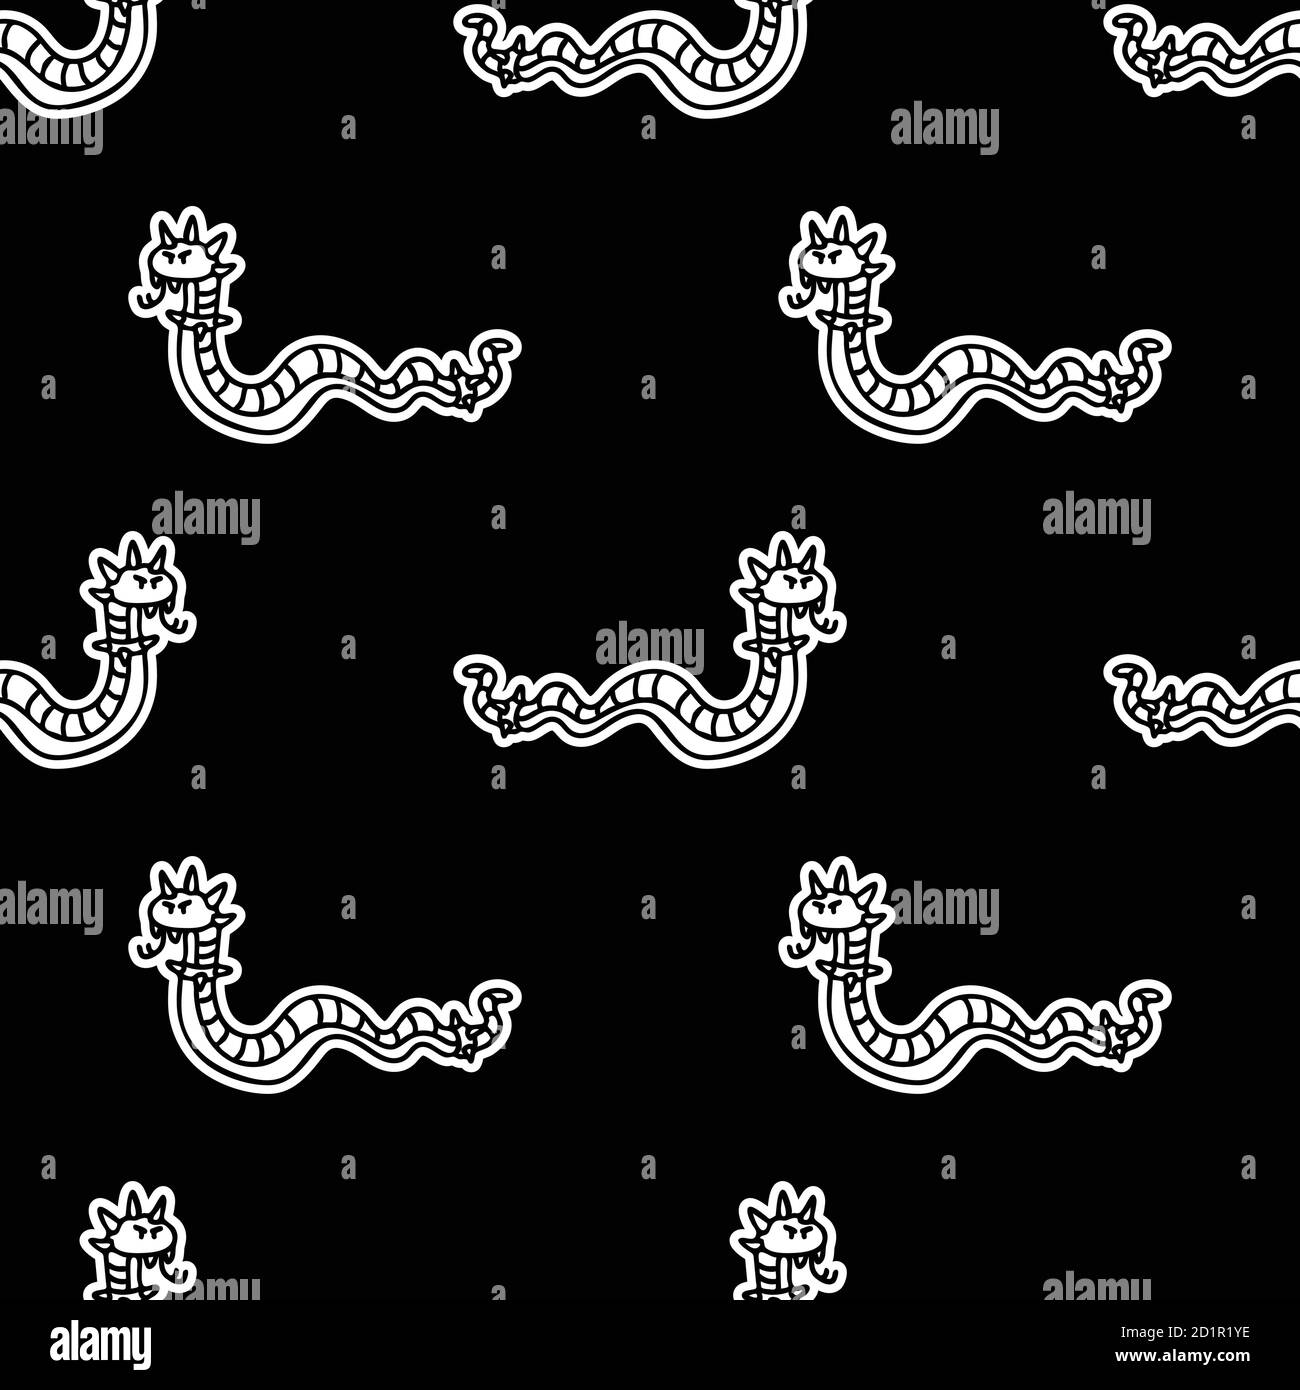 Cute Punk Rock Schlange monochrome lineart auf schwarzem Hintergrund Vektor-Muster. Grungy Alternative karierte Wohnkultur mit Cartoon Tier. Nahtlos Stock Vektor